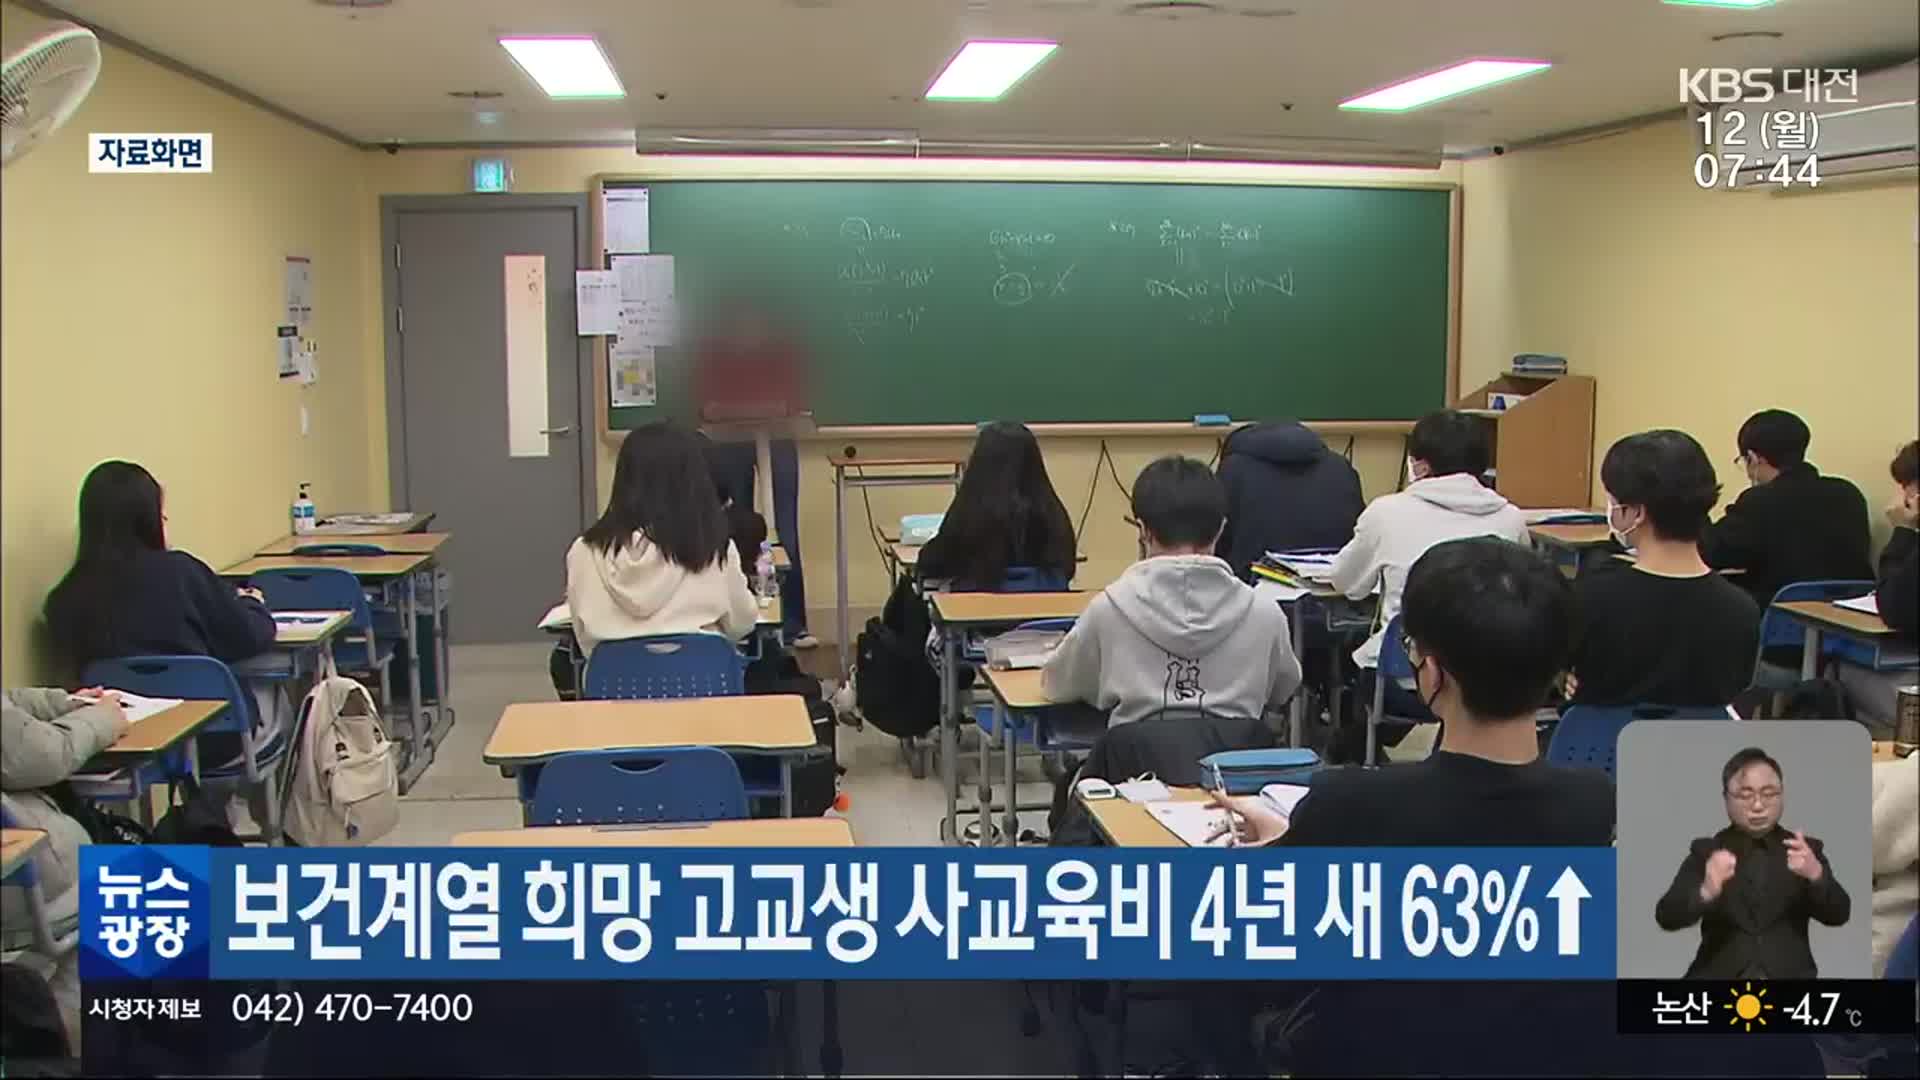 보건계열 희망 고교생 사교육비 4년 새 63%↑